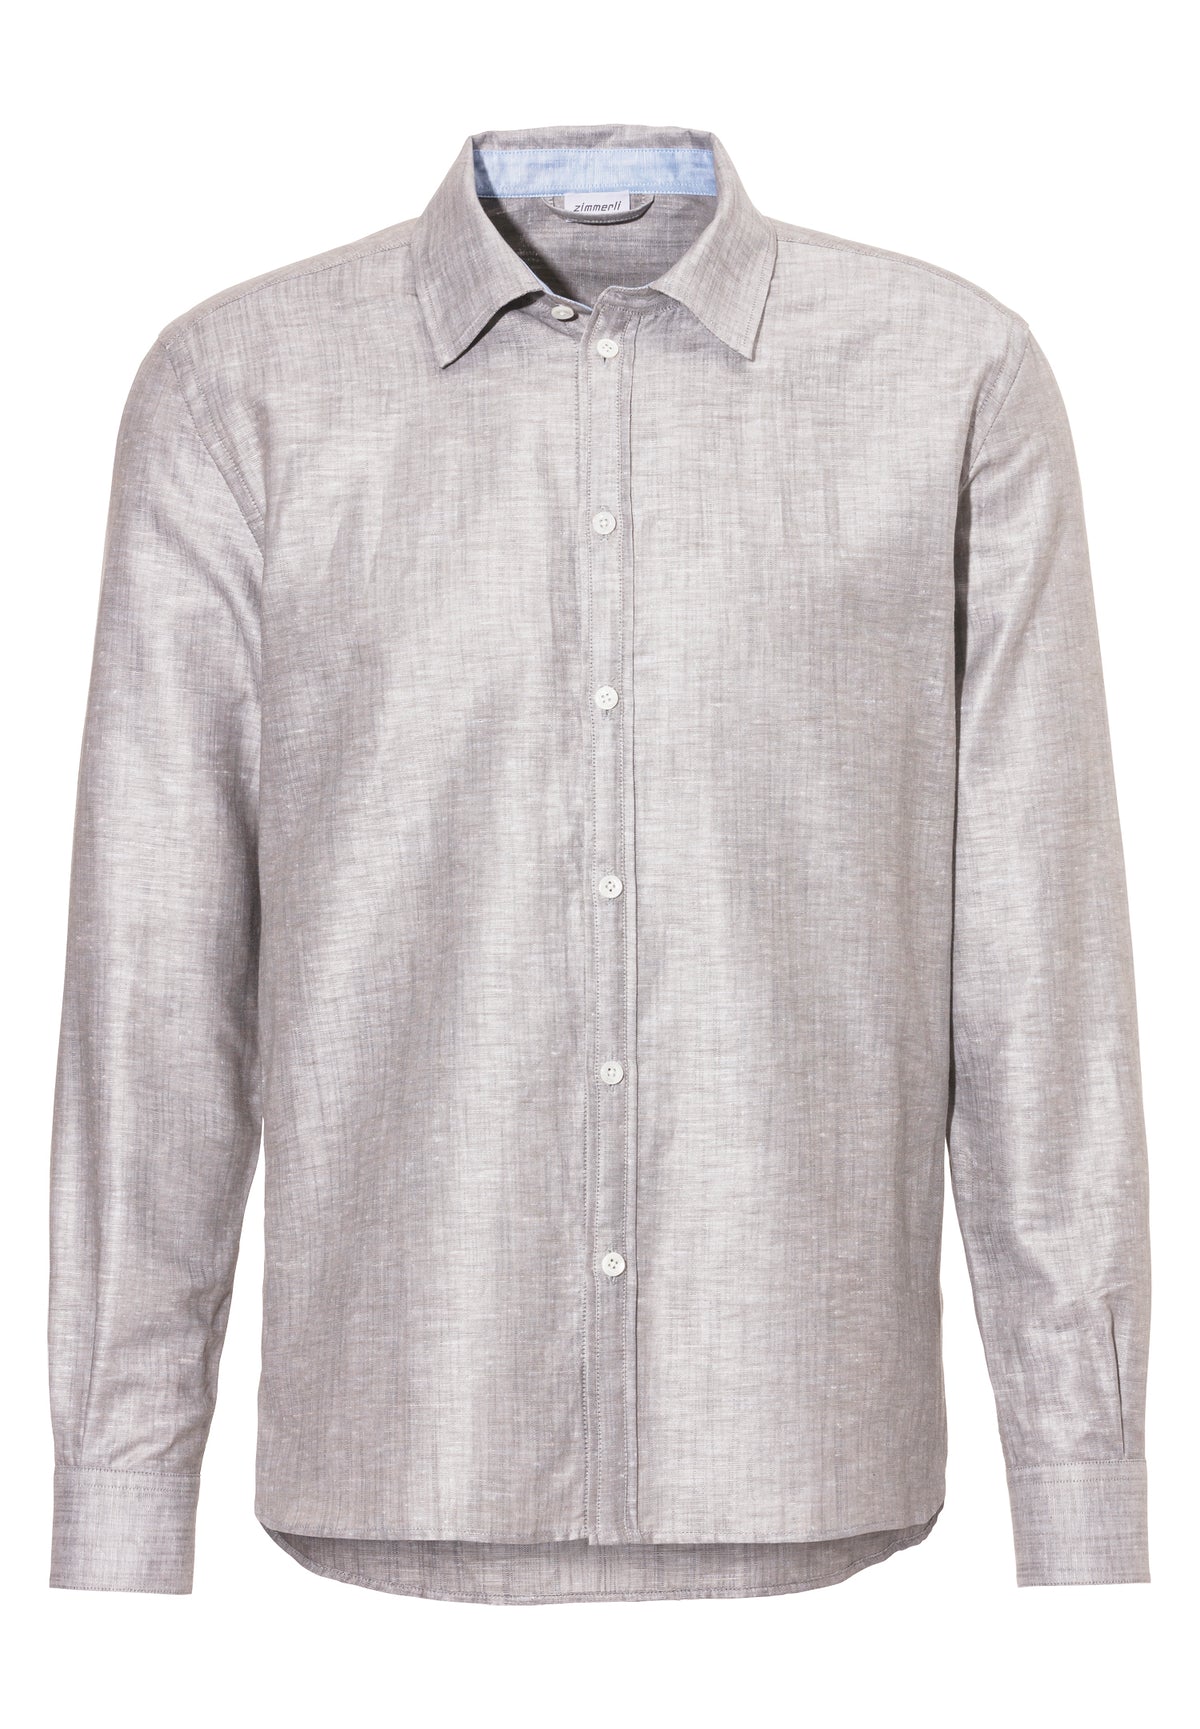 Linen Blend | Button Front Shirt Long Sleeve - greystone